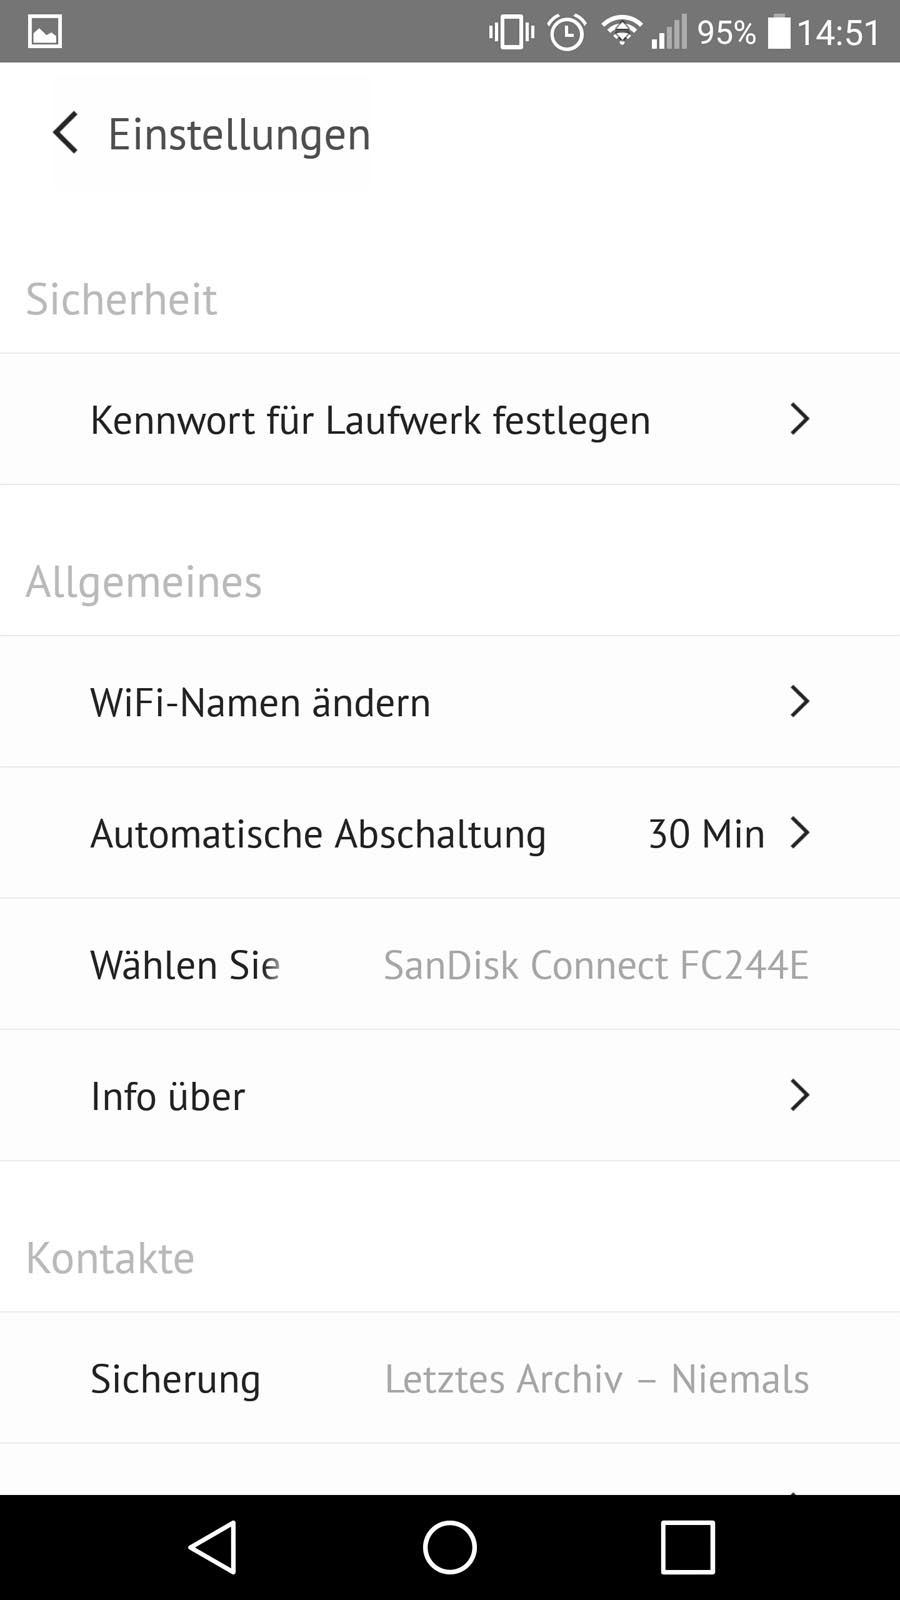 SanDisk Wireless Connect App - Einstellungen